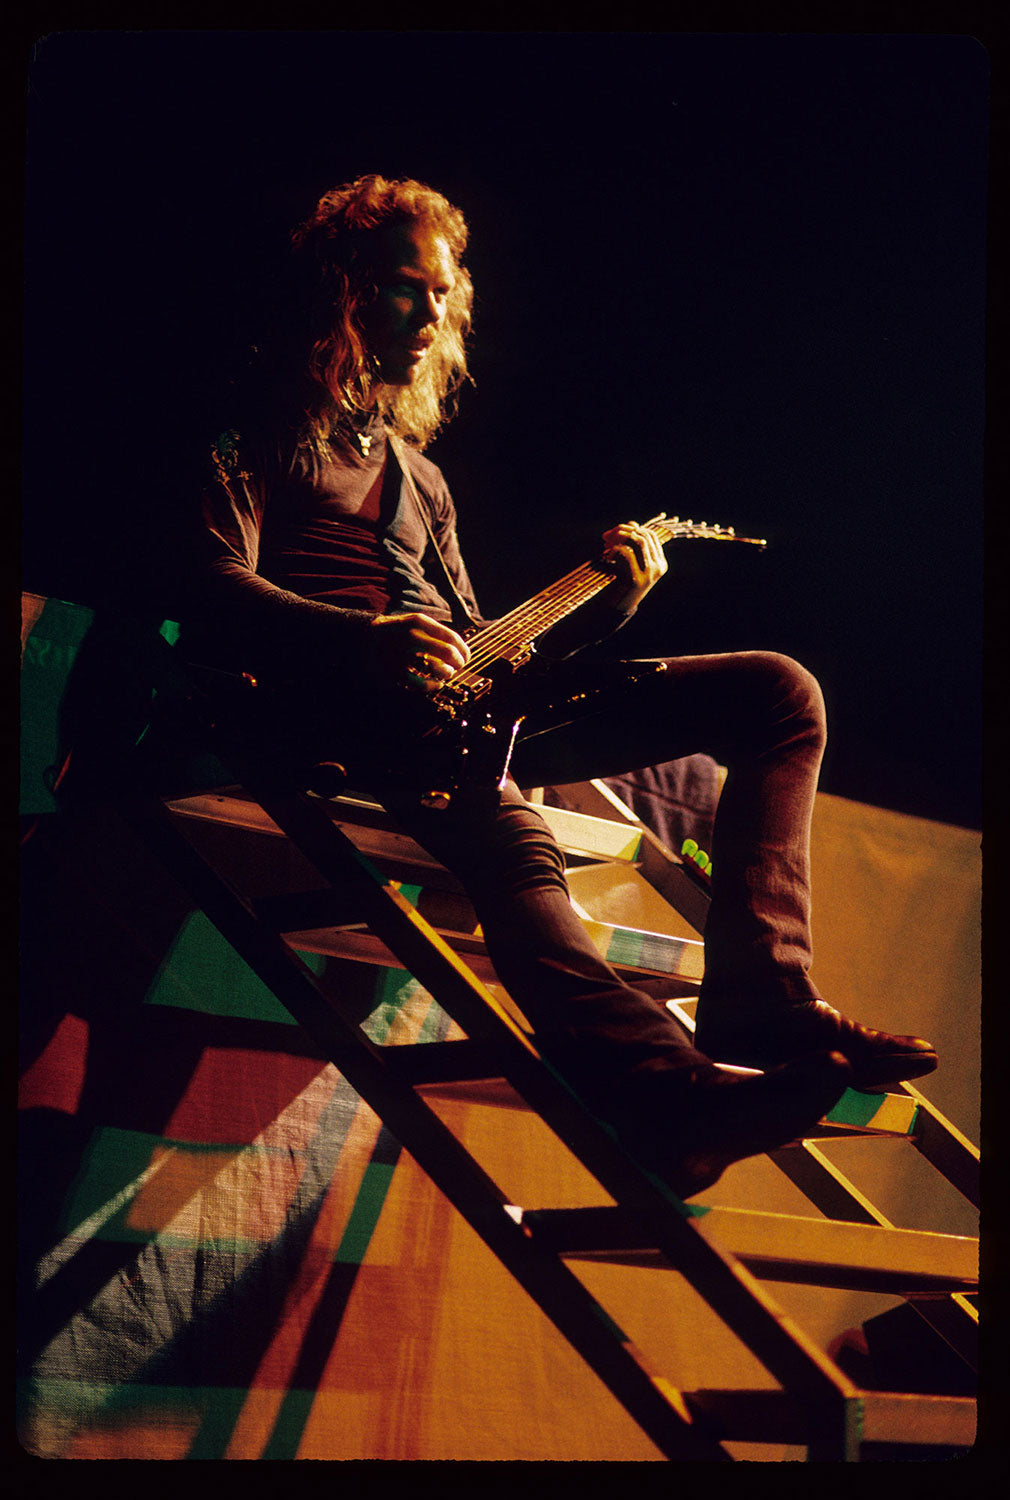 James Hetfield Plays Guitar on Stairs